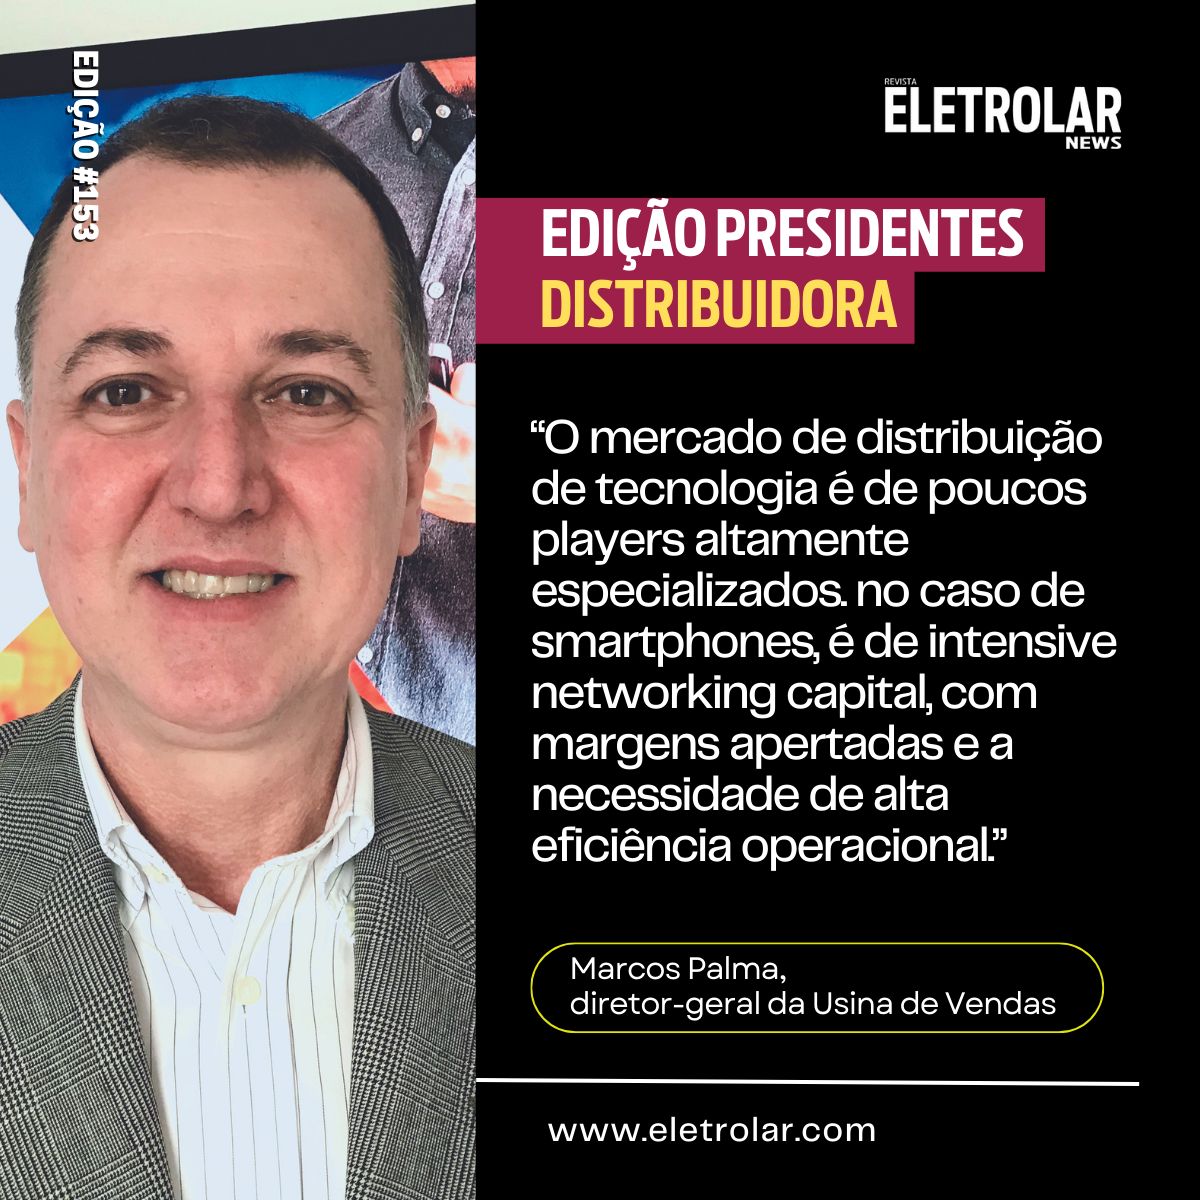 Marcos Palma, para a Eletrolar News edição Presidentes.